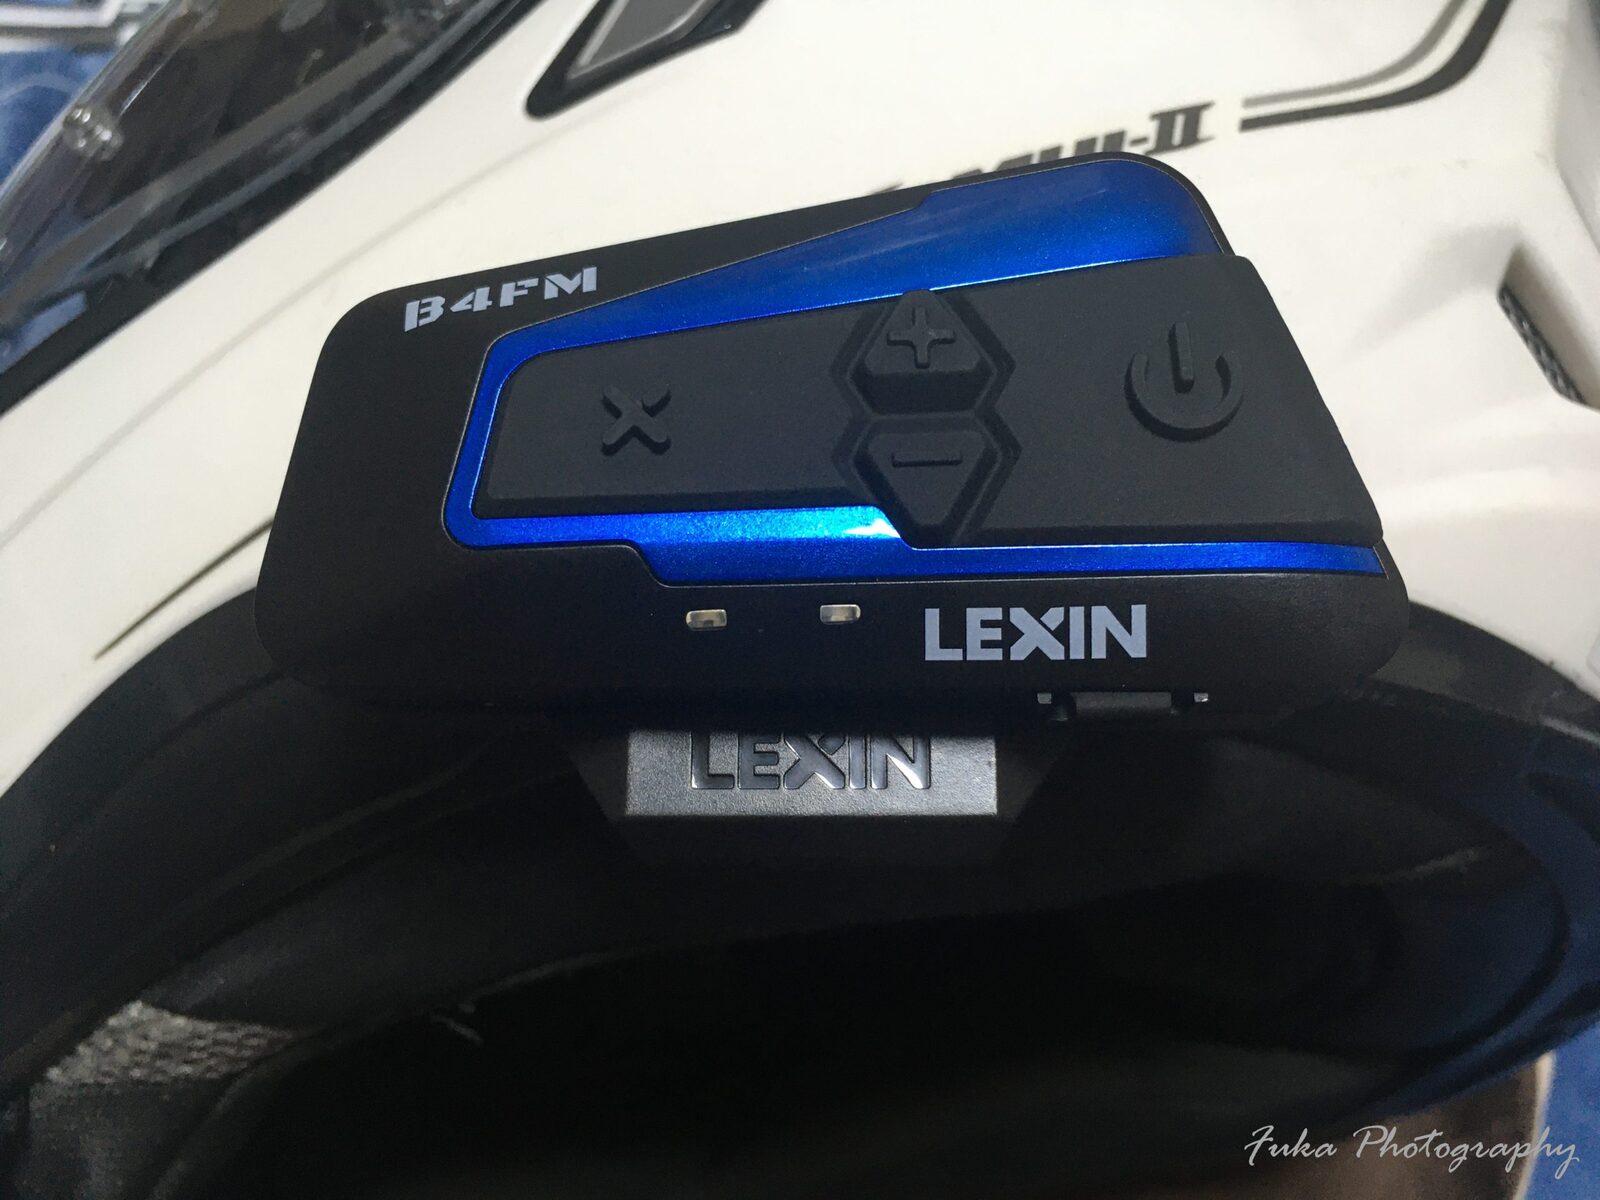 バイク インカム LEXIN 「LX-B4FM SINGLE PACK」 を購入してみました 